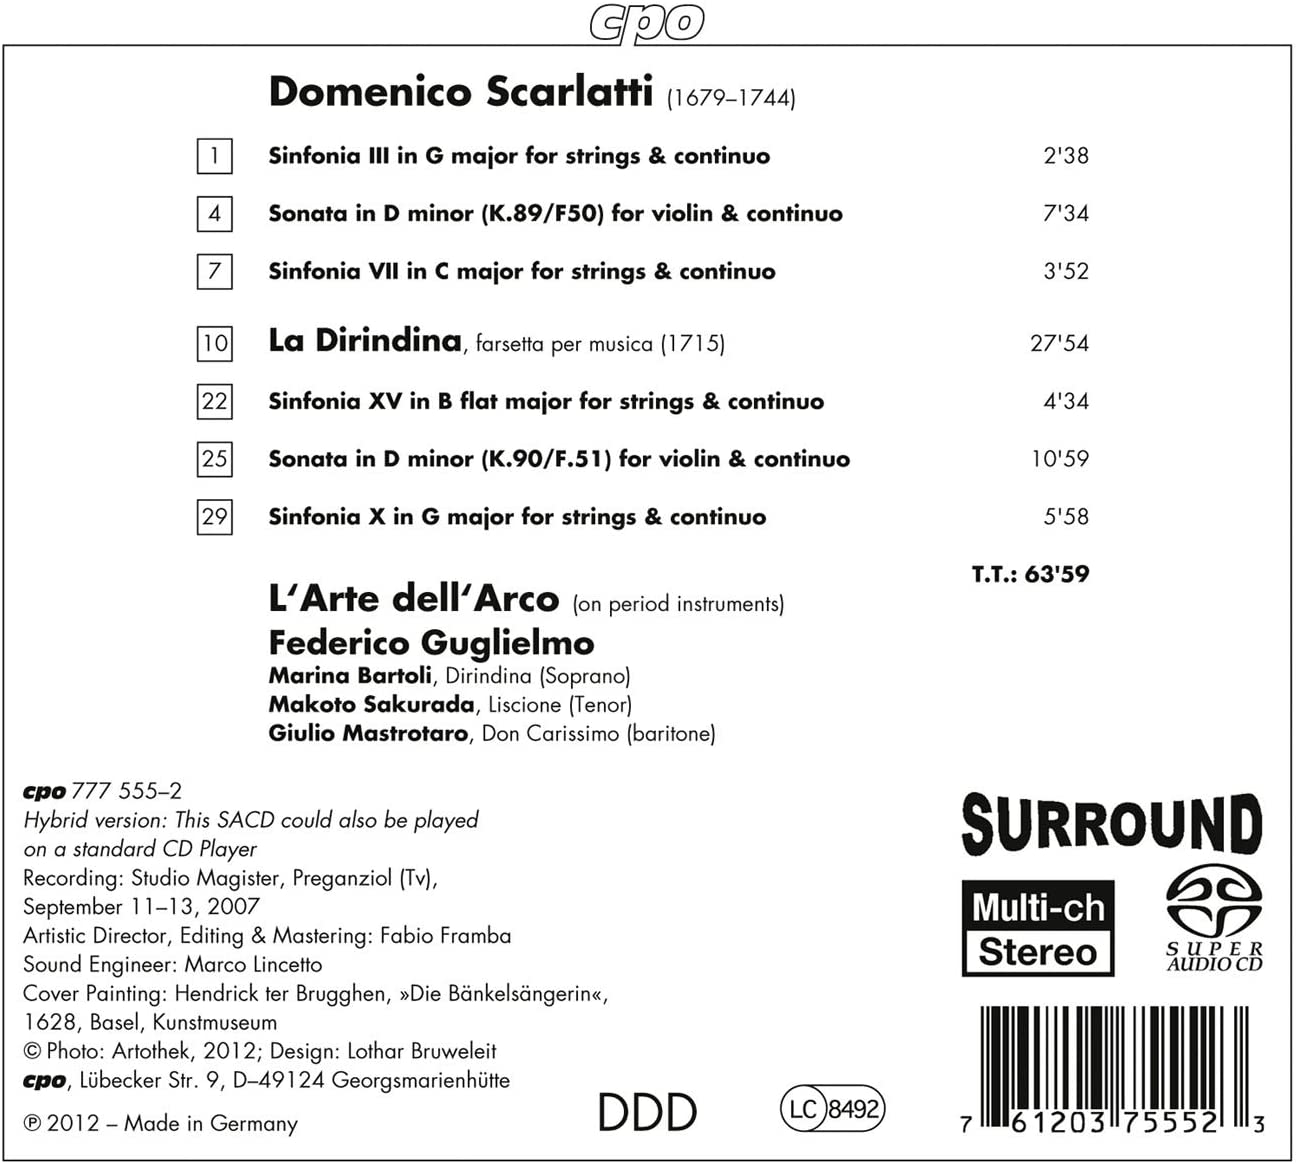 Scarlatti: La Dirindina, farsetta per musica + Sinfonias & Sonatas - slide-1